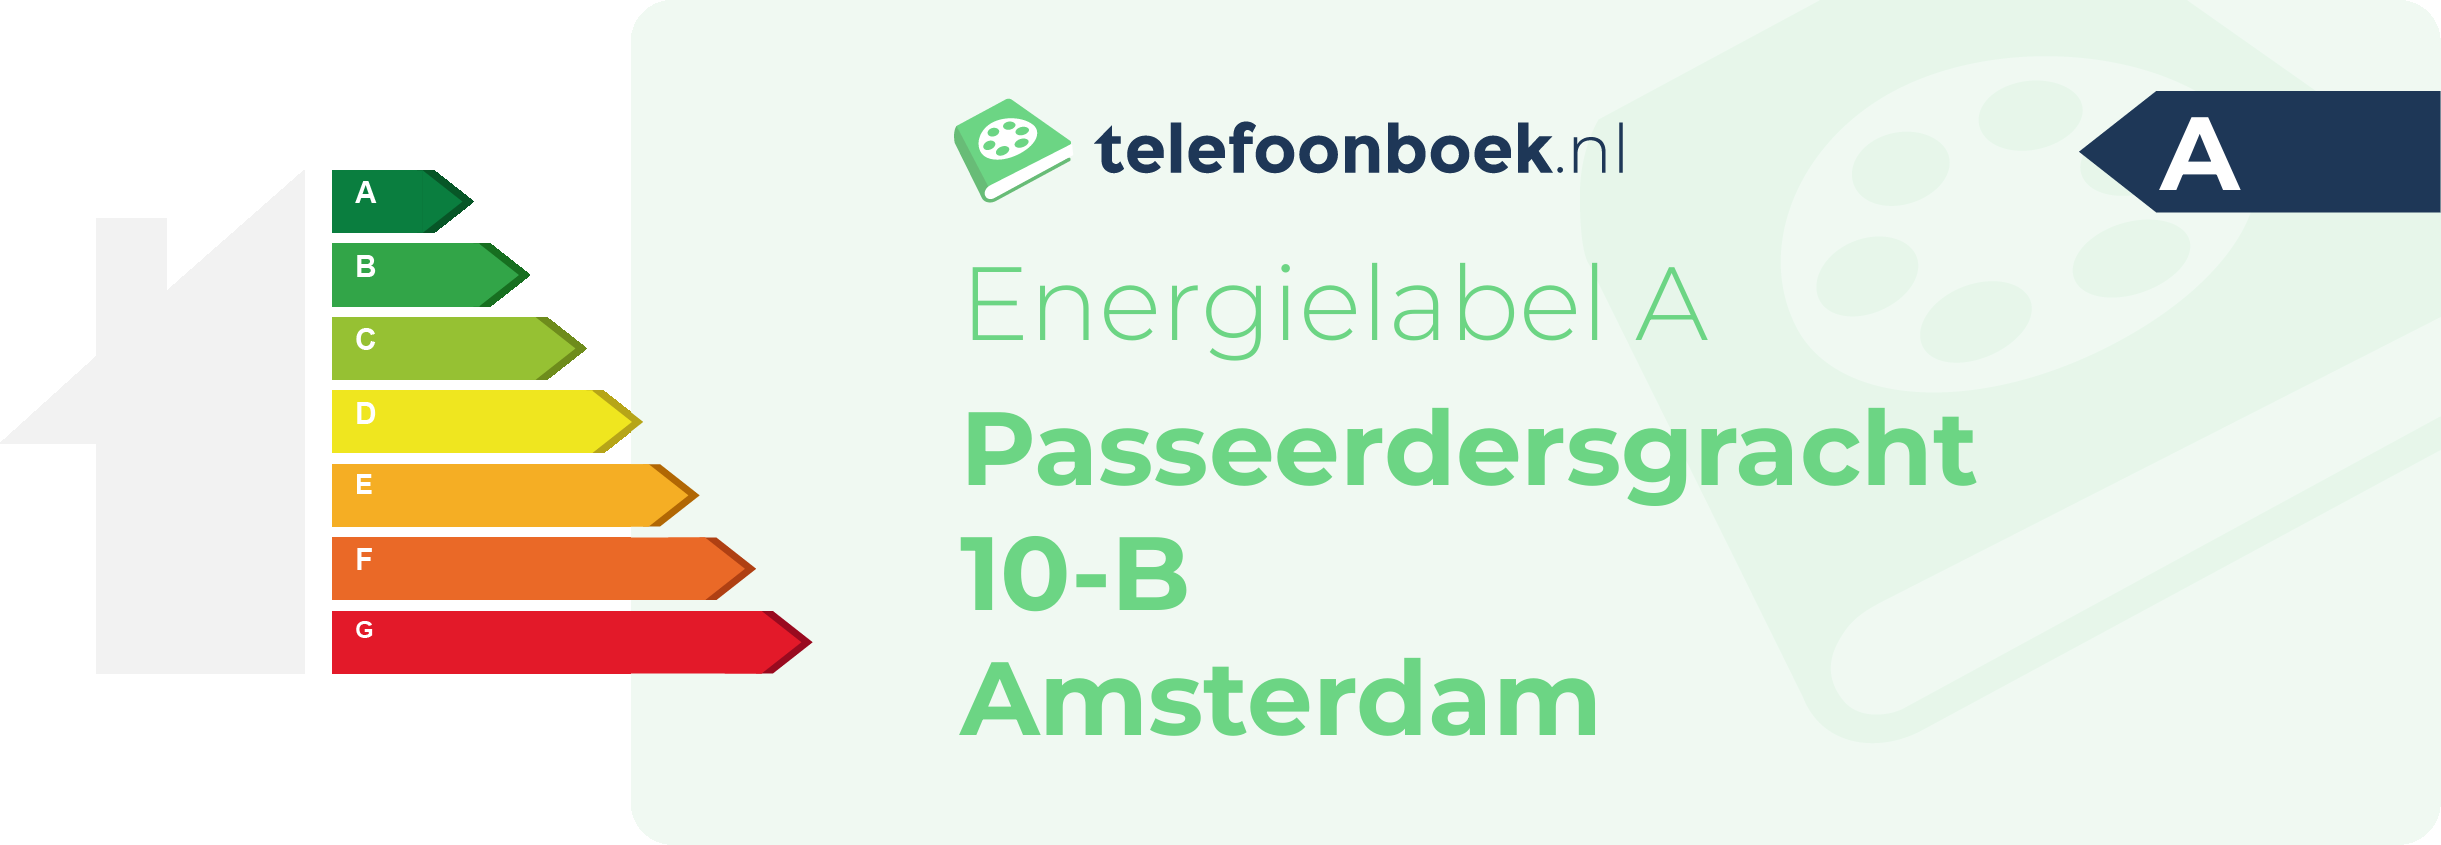 Energielabel Passeerdersgracht 10-B Amsterdam